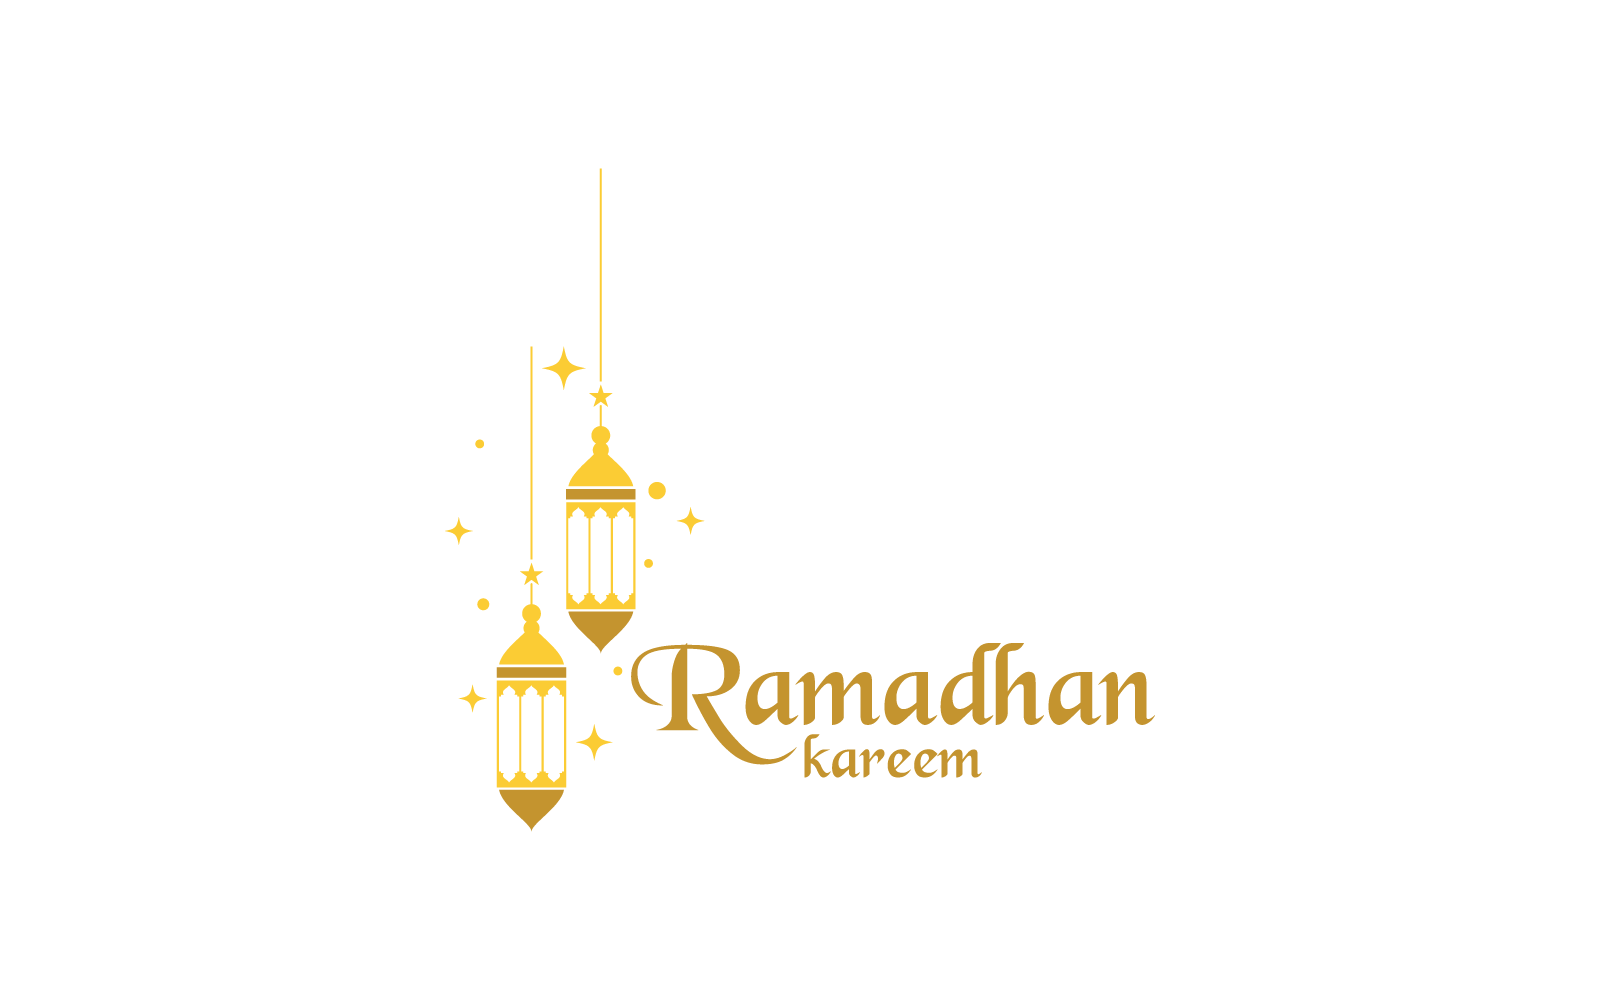 Plantilla vectorial del icono del logotipo de Ramadhan Kareem